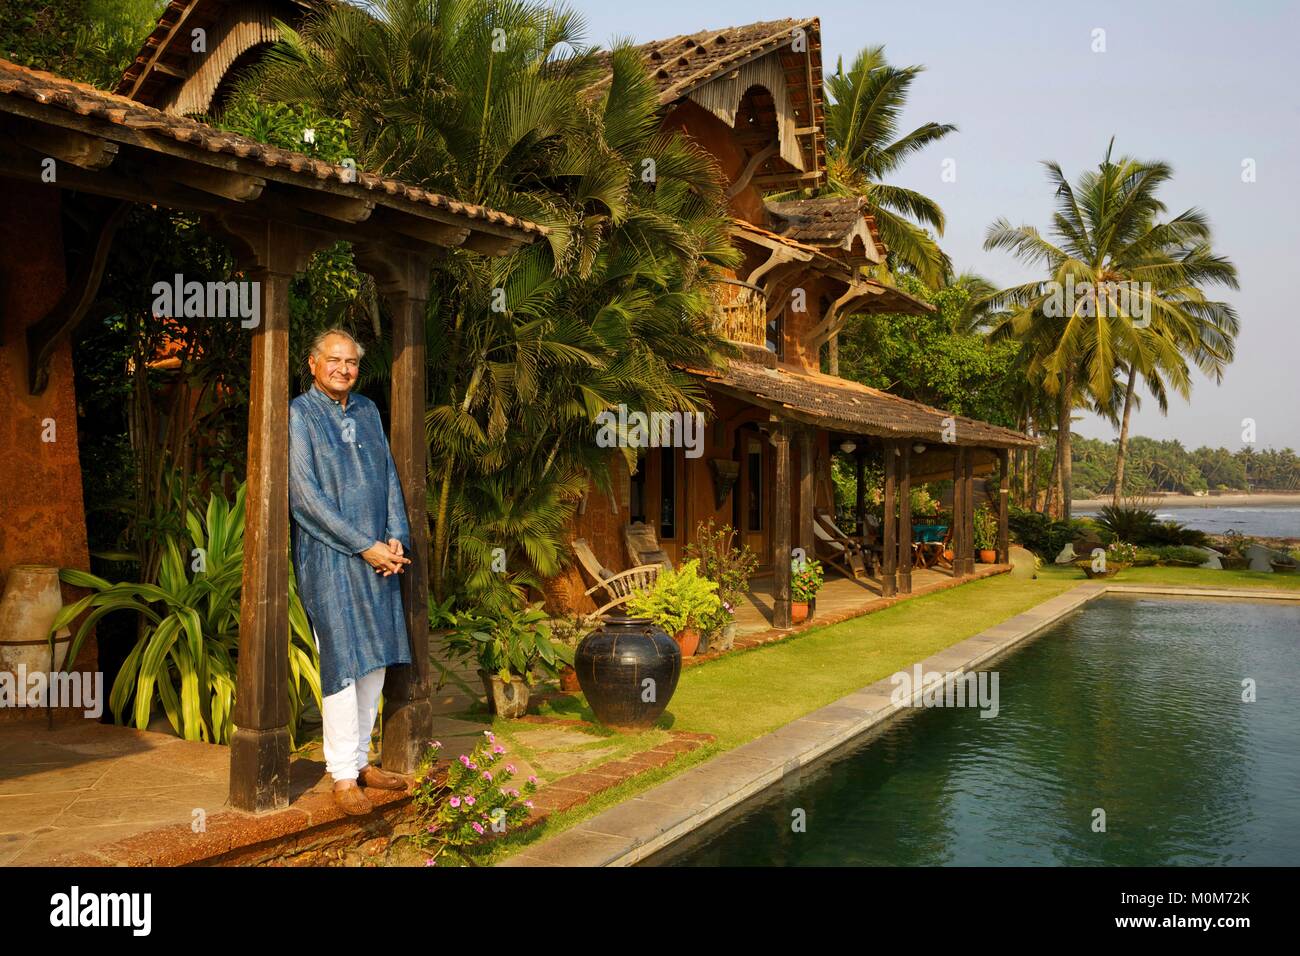 Indien, Goa, Coco Beach, Richard Holkar, Sohn des maharadjah von Indore, vor seinem Luxushotel Ahilya am Meer mit seinem Schwimmbad, vor einem Strand mit Kokospalmen gesäumt Stockfoto